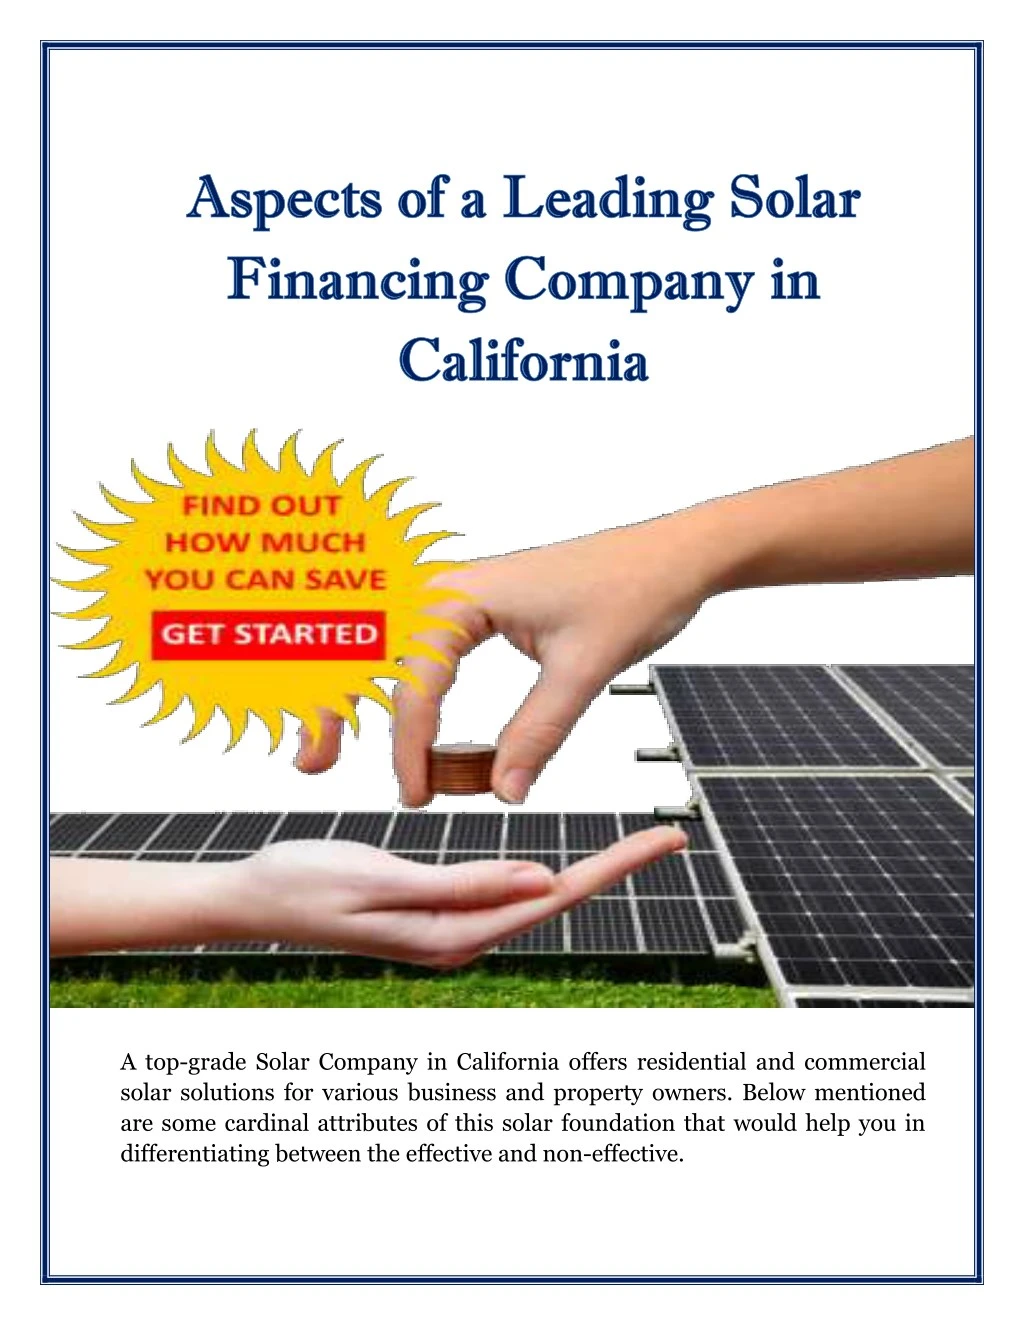 a top grade solar company in california offers